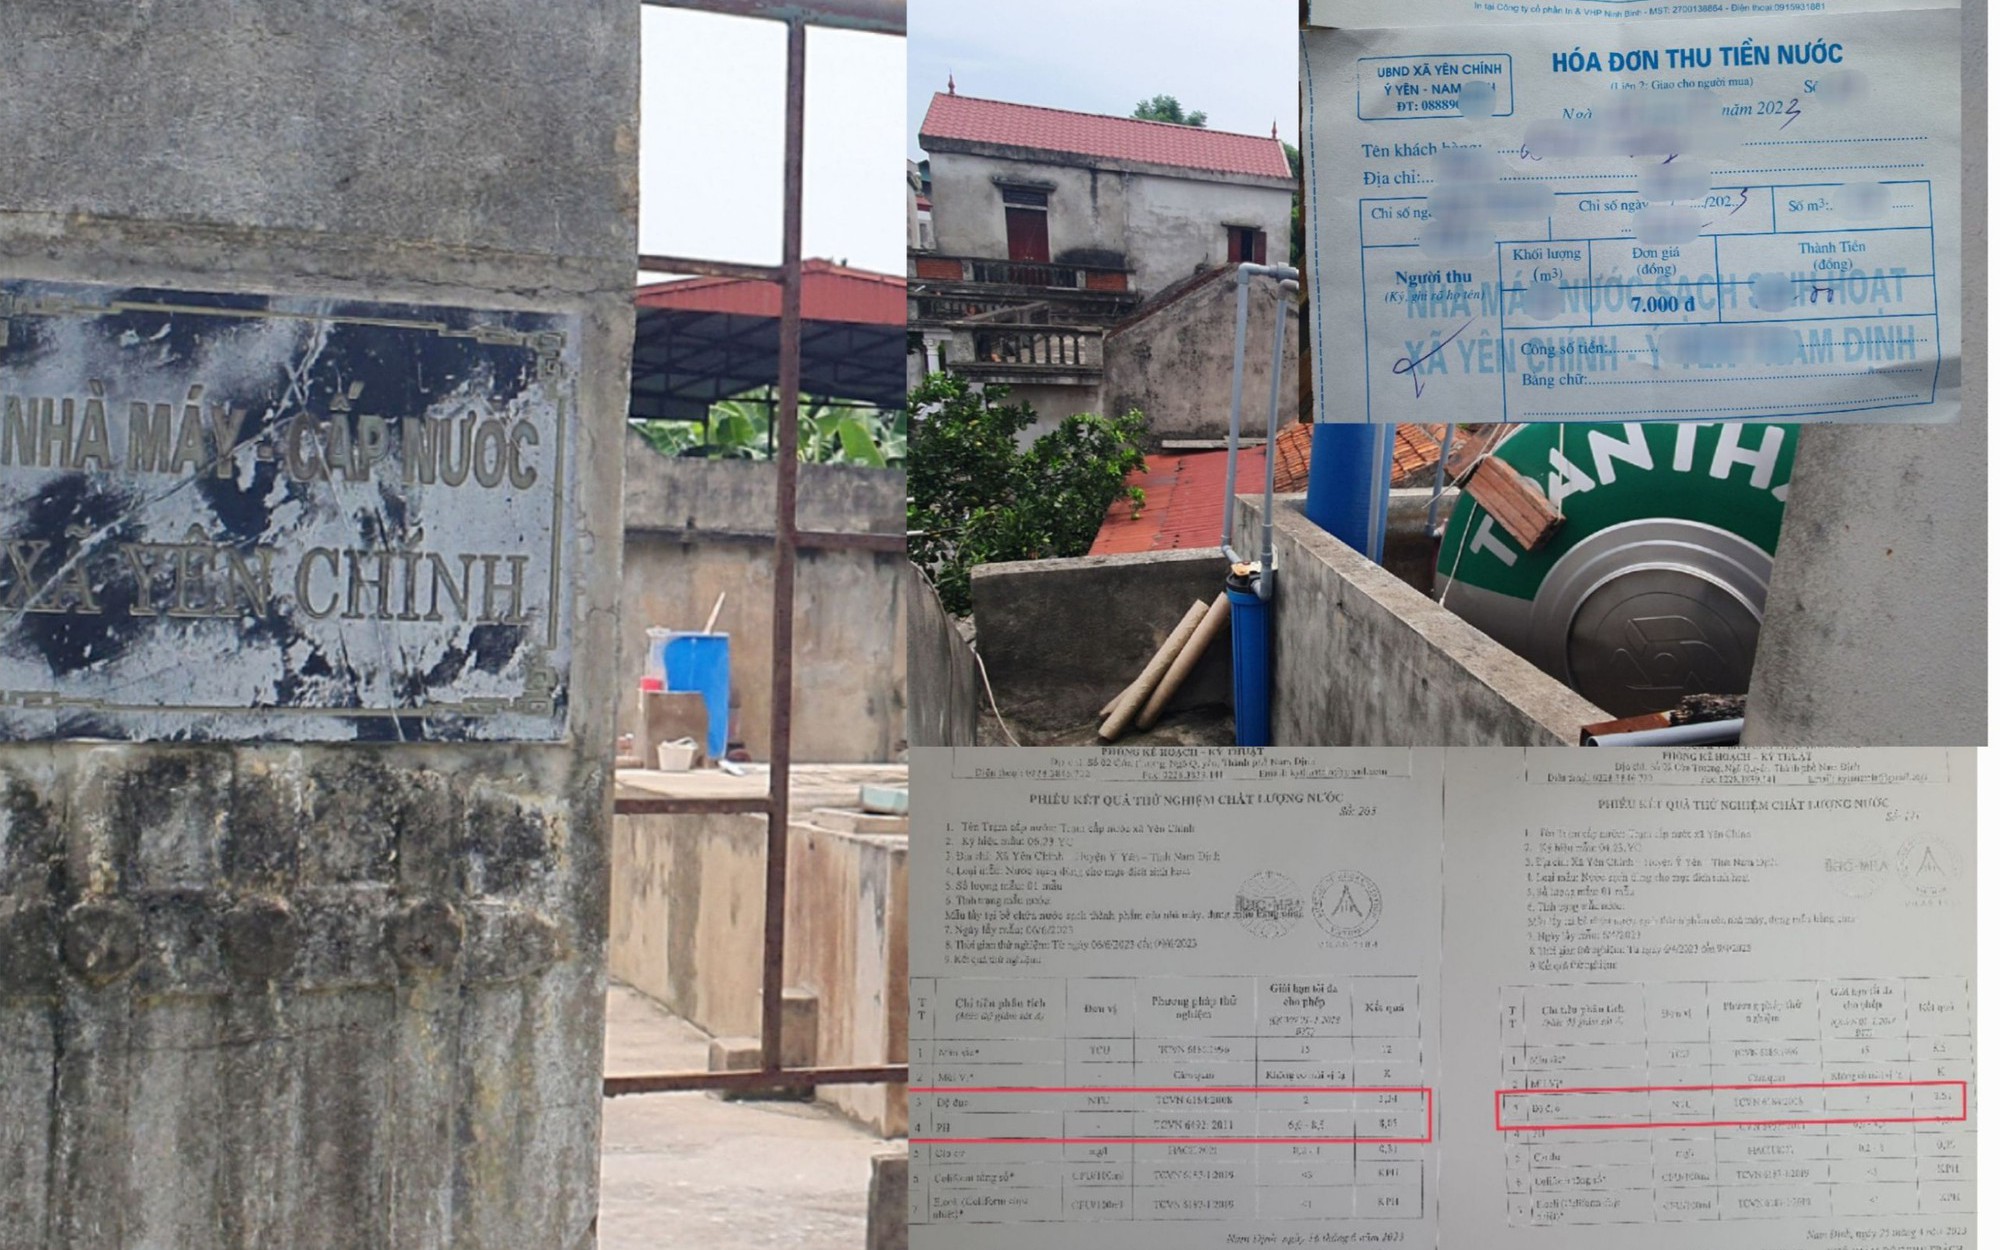 Sở NN&PTNT chỉ đạo khẩn sau vụ "chuyện lạ về nước sạch ở Nam Định" do Gia đình và Xã hội đăng tải